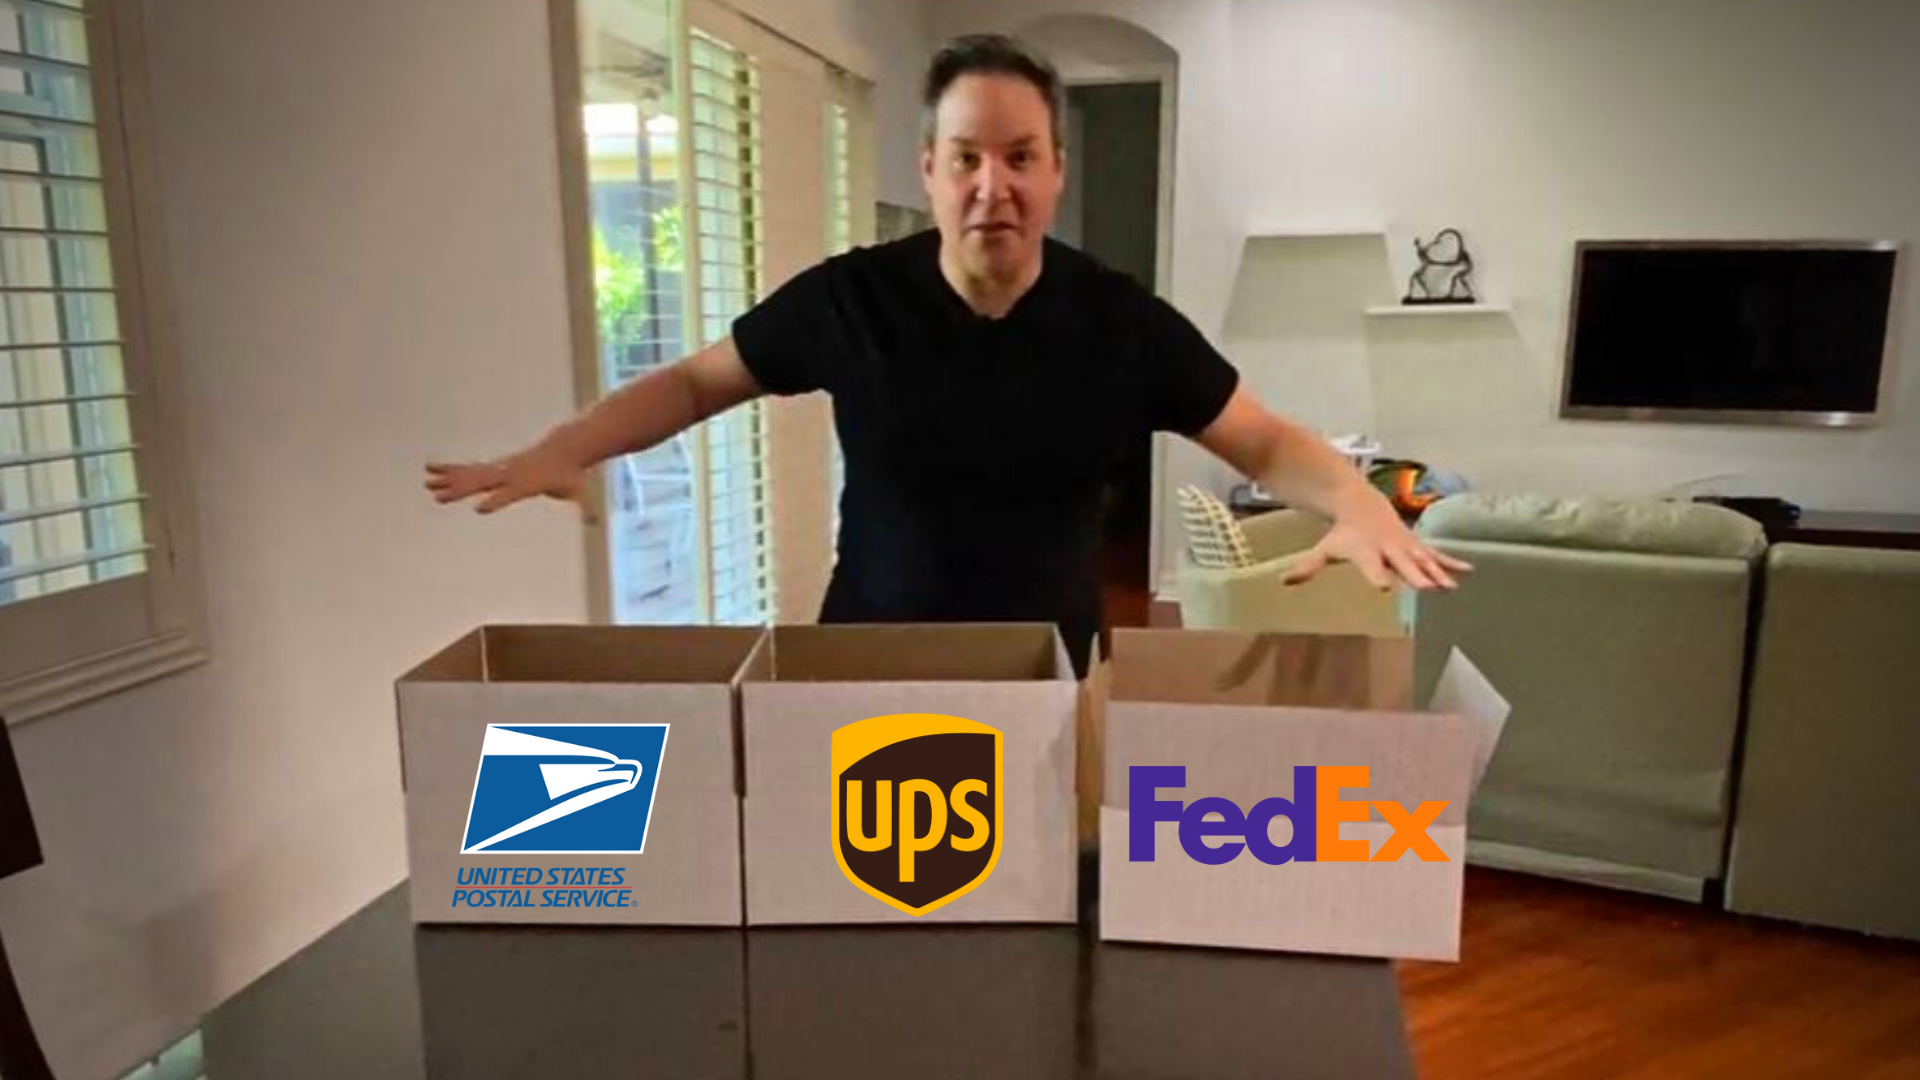 ups shipping box